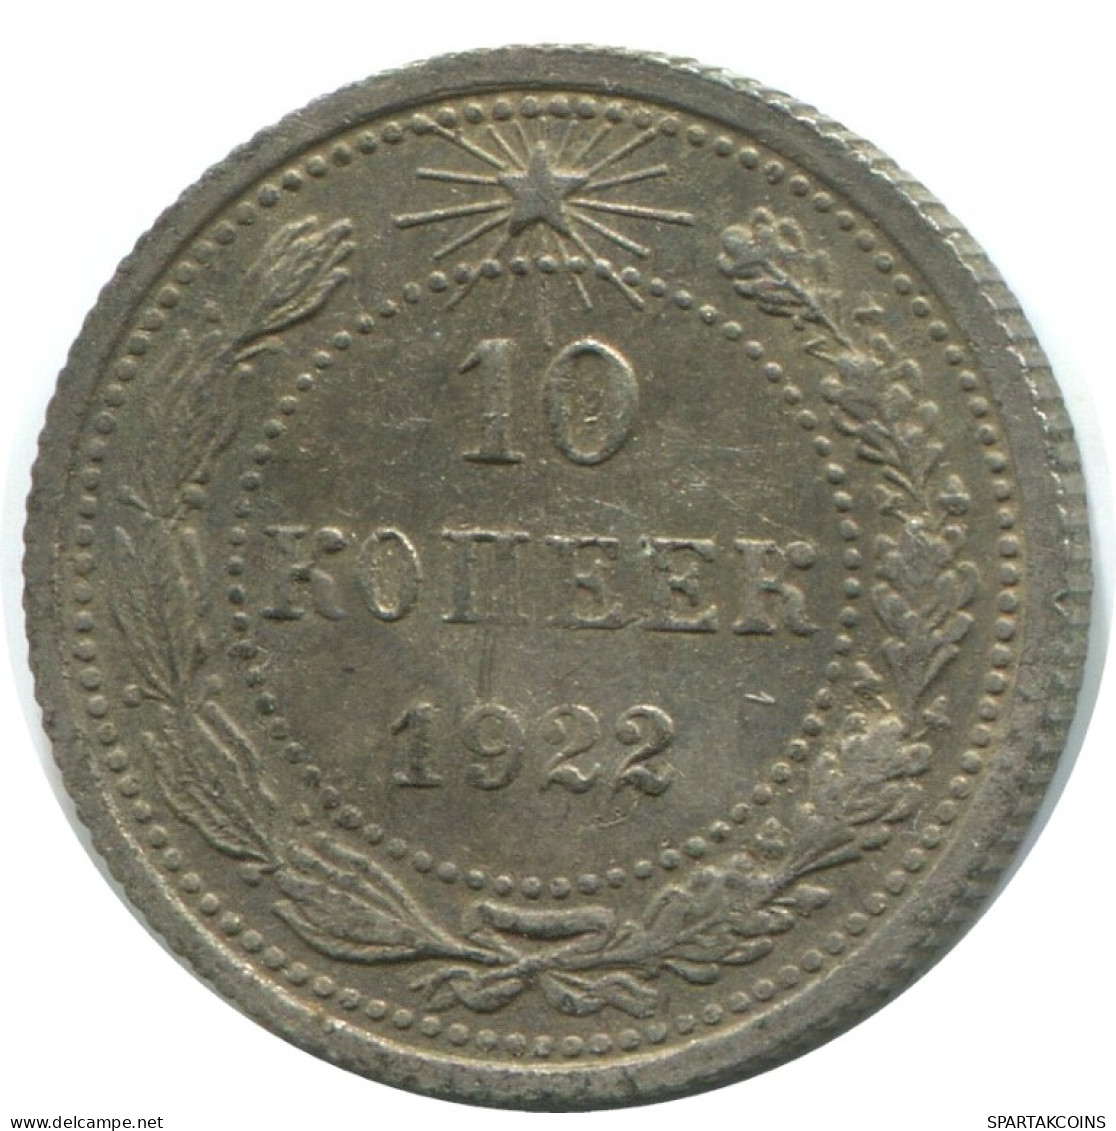 10 KOPEKS 1923 RUSSLAND RUSSIA RSFSR SILBER Münze HIGH GRADE #AE864.4.D.A - Russia